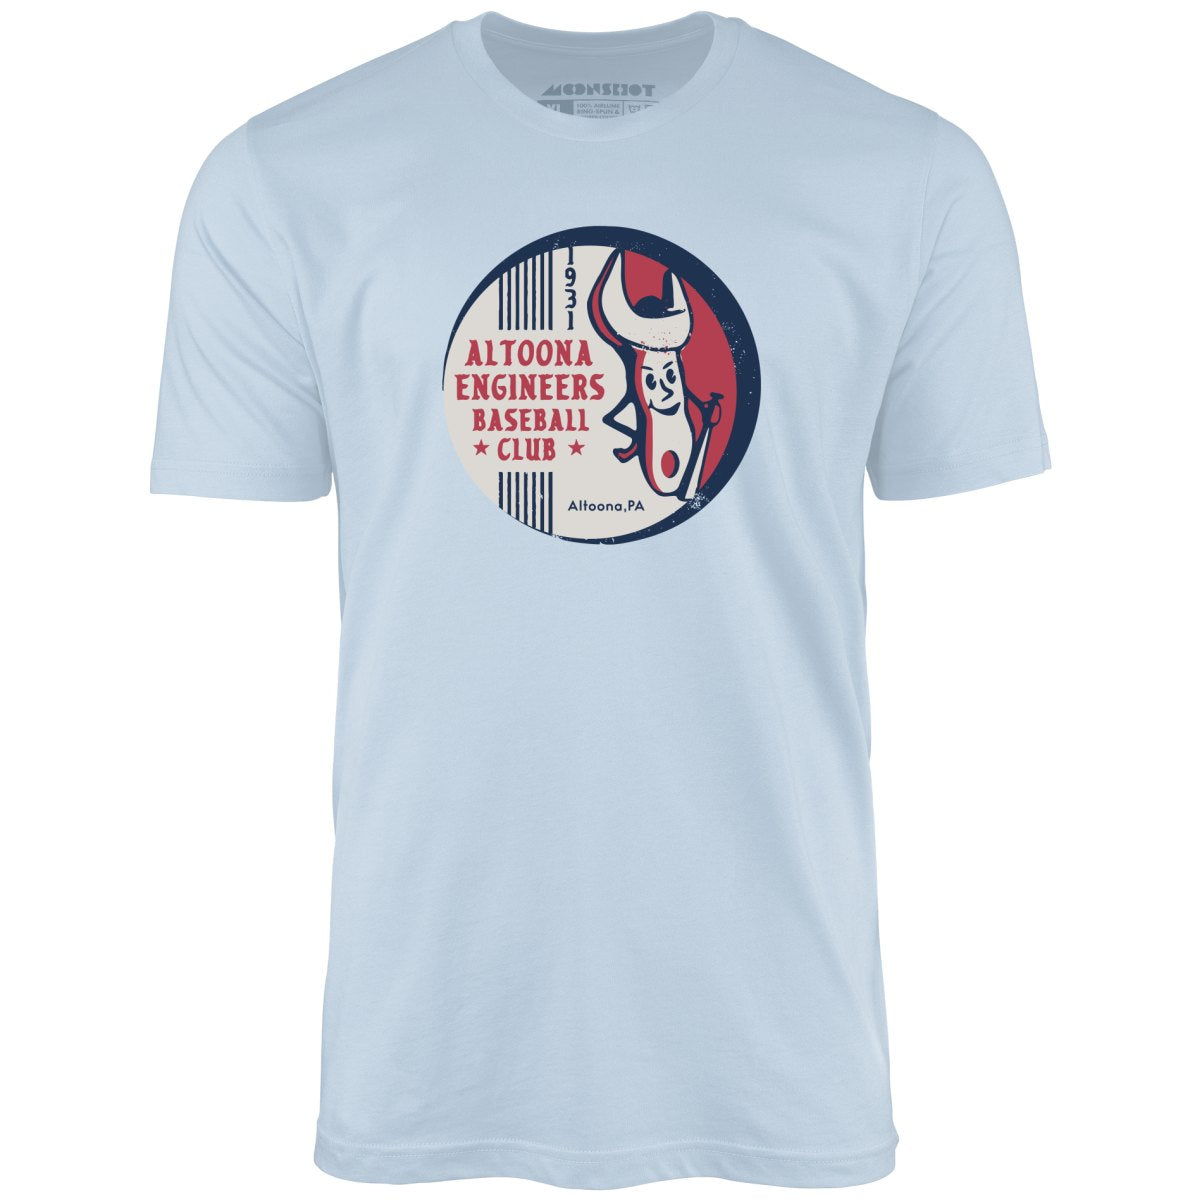 Altoona Engineers - Pennsylvania - Vintage Defunct Baseball Teams - Unisex T-Shirt